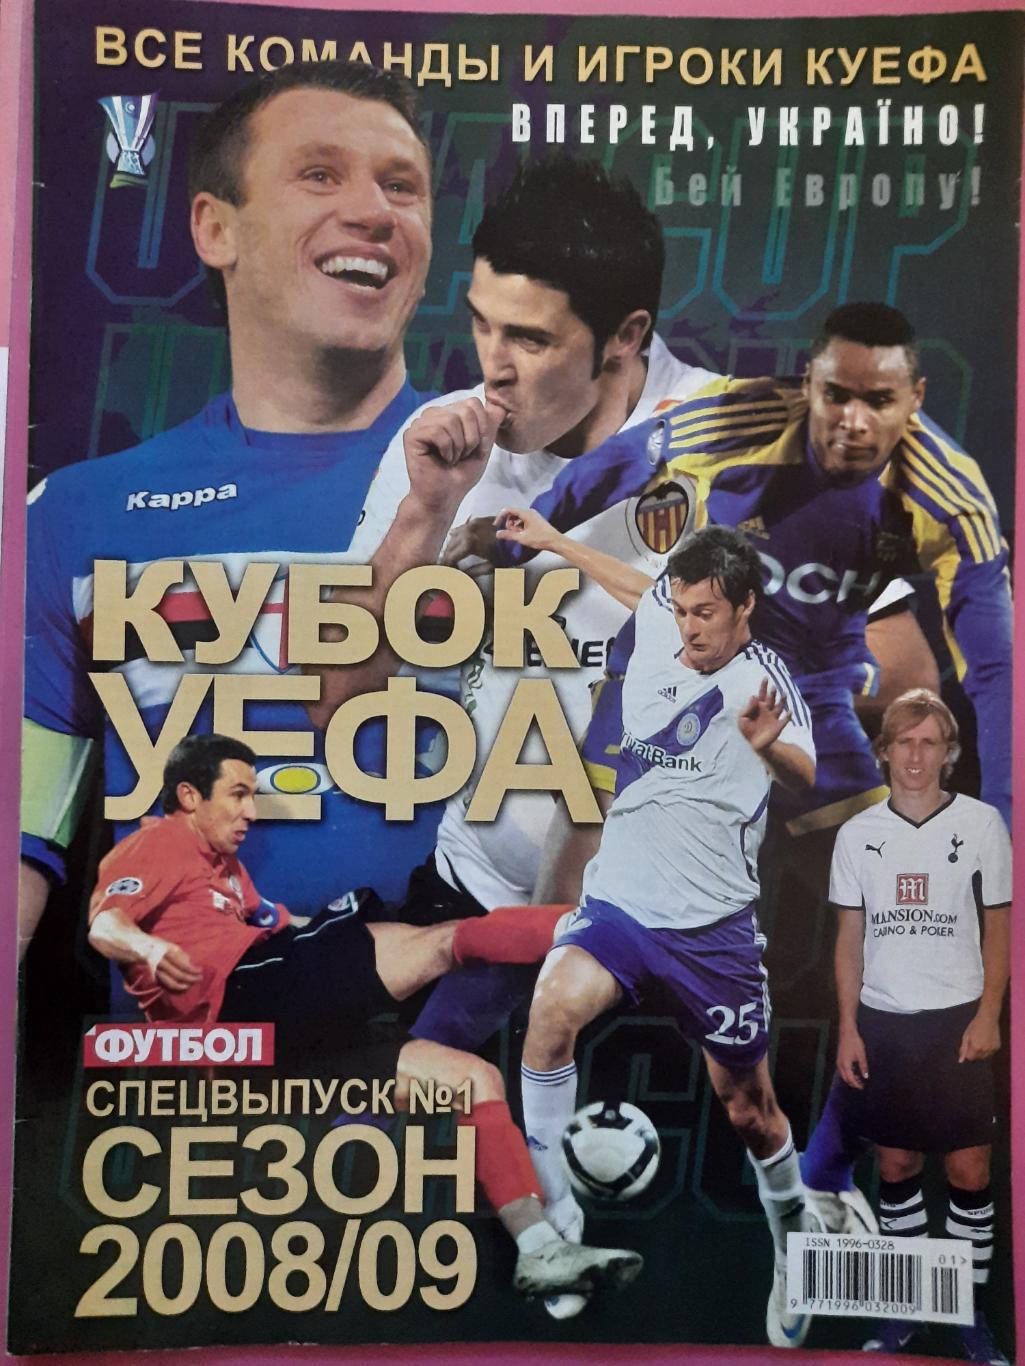 еженедельник Футбол спецвыпуск #1 2008 , Кубок УЕФА 2008/09.